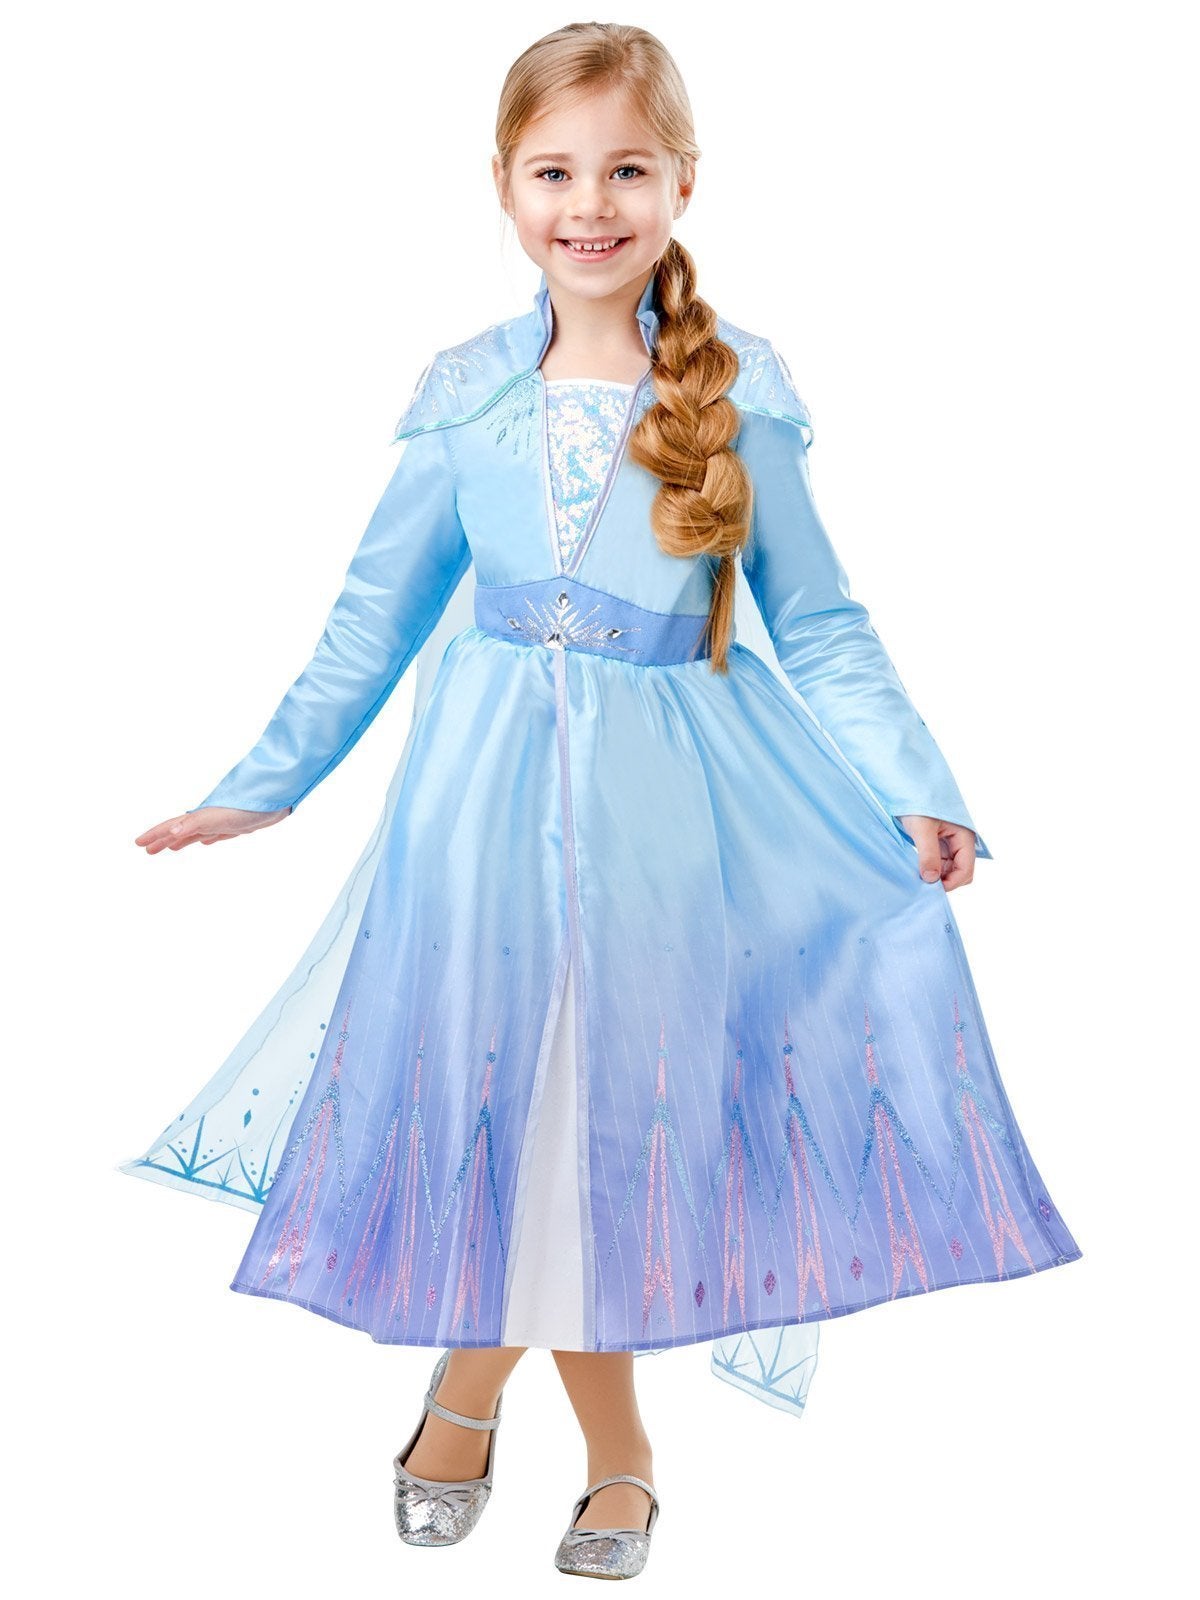 Elsa Deluxe Costume for Kids - Disney Frozen 2